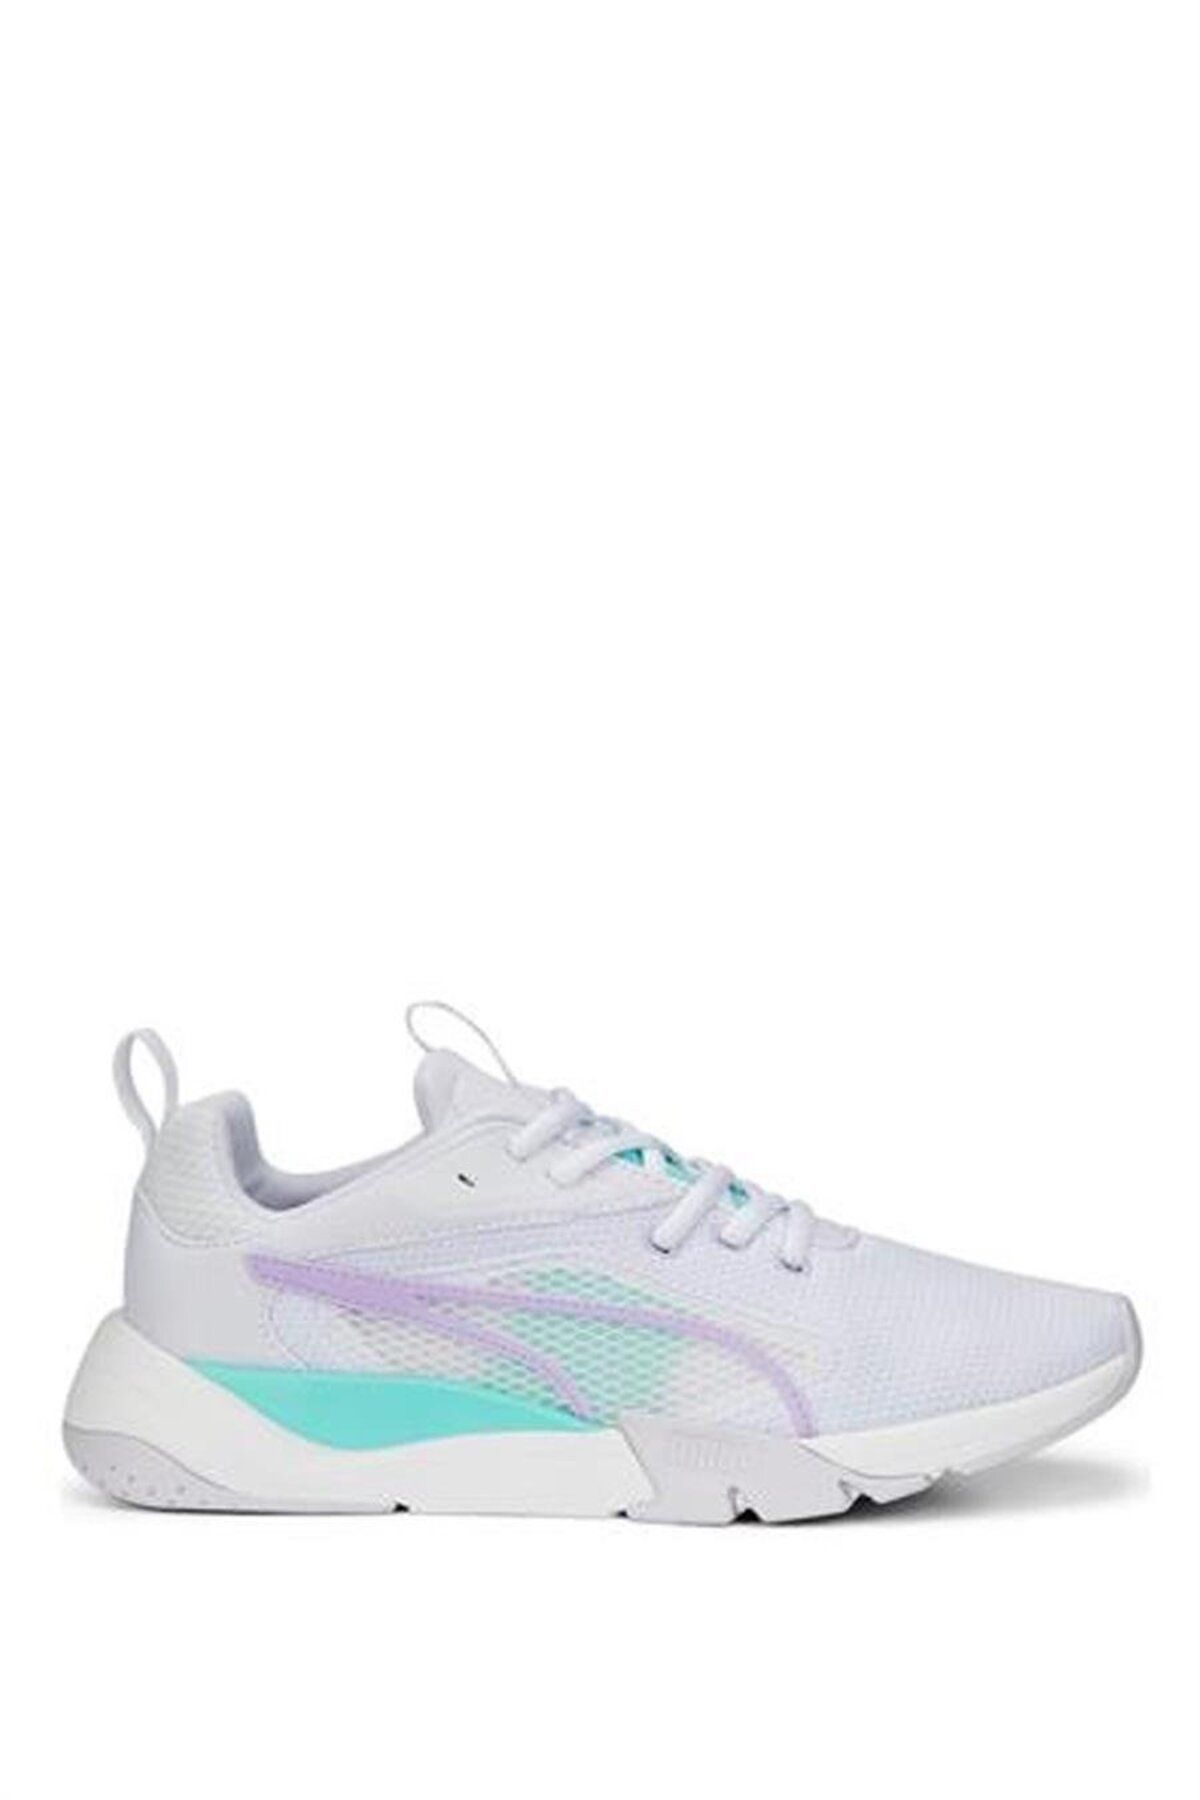 Puma 386274 Zora Beyaz-vivid Violet-electrıc Peppermint Yetişkin Unisex Yürüyüş Ayakkabı